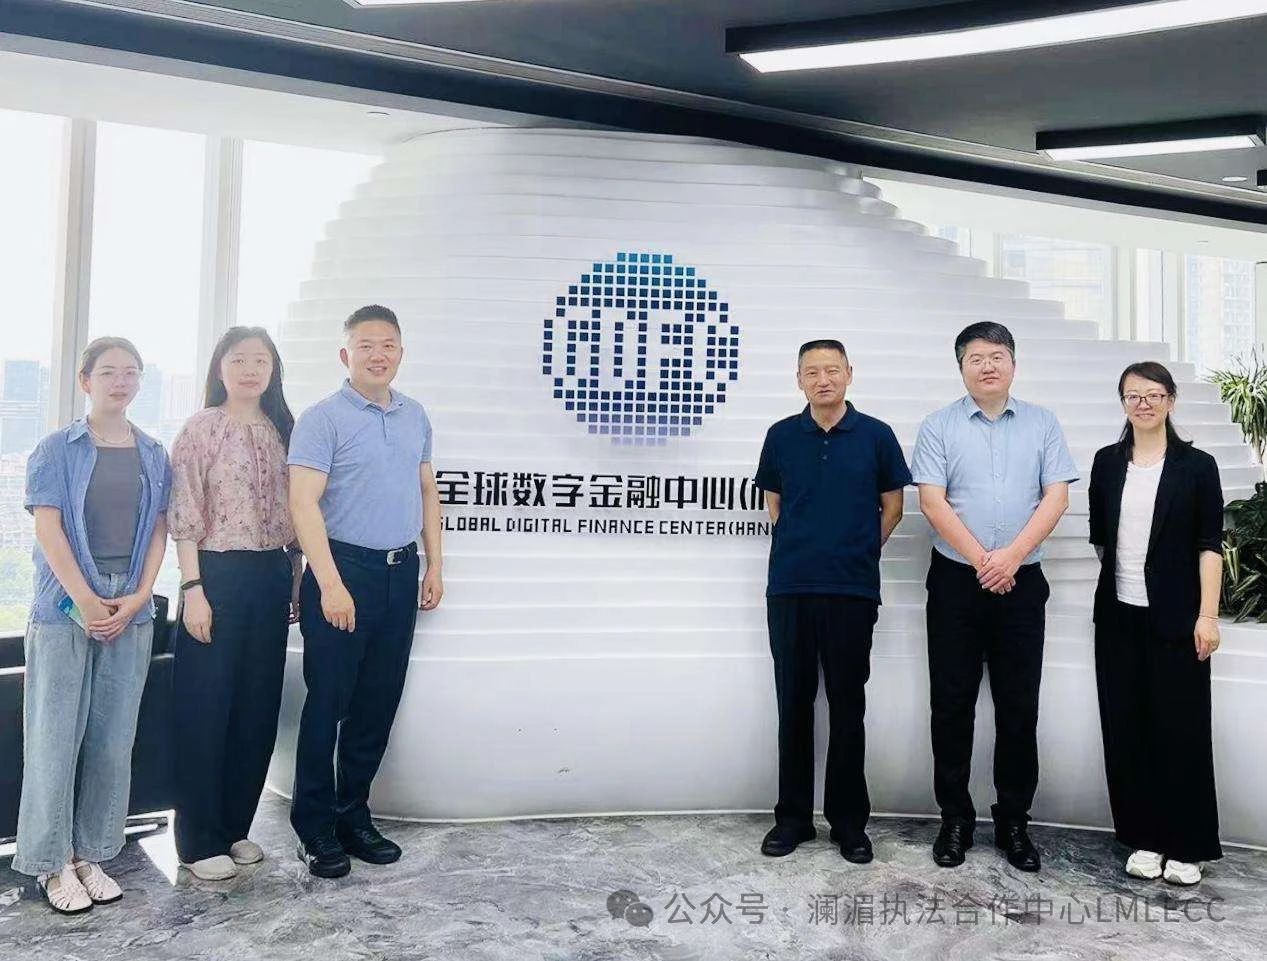 LMLECC Delegation Visits Global Digital Finance Center (Hangzhou)